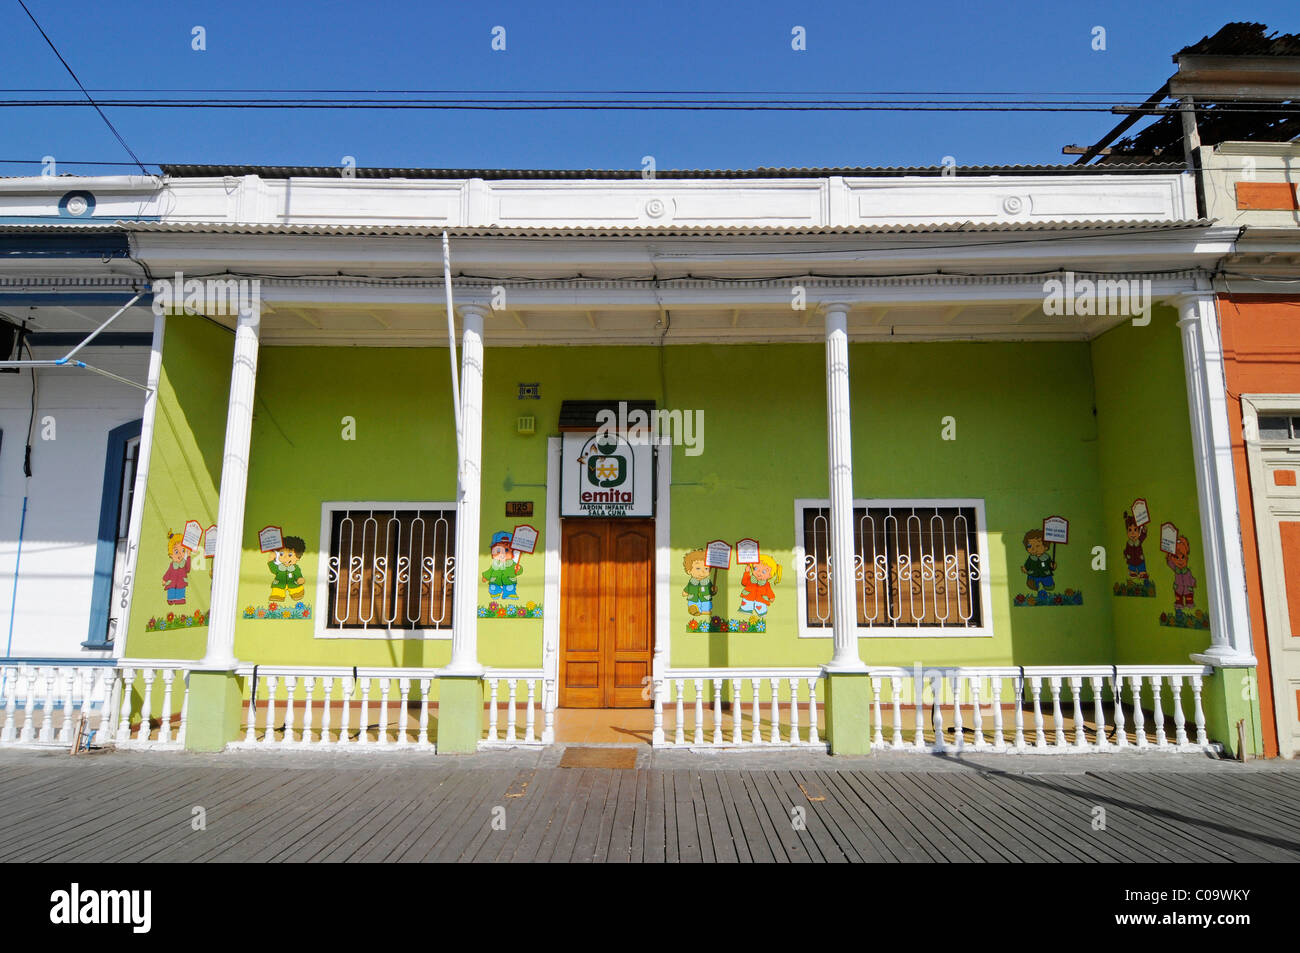 La maternelle, Avenue Baquedano, bâtiments historiques, colorées, maisons en bois et les porches, Iquique, Norte Grande, le nord du Chili Banque D'Images